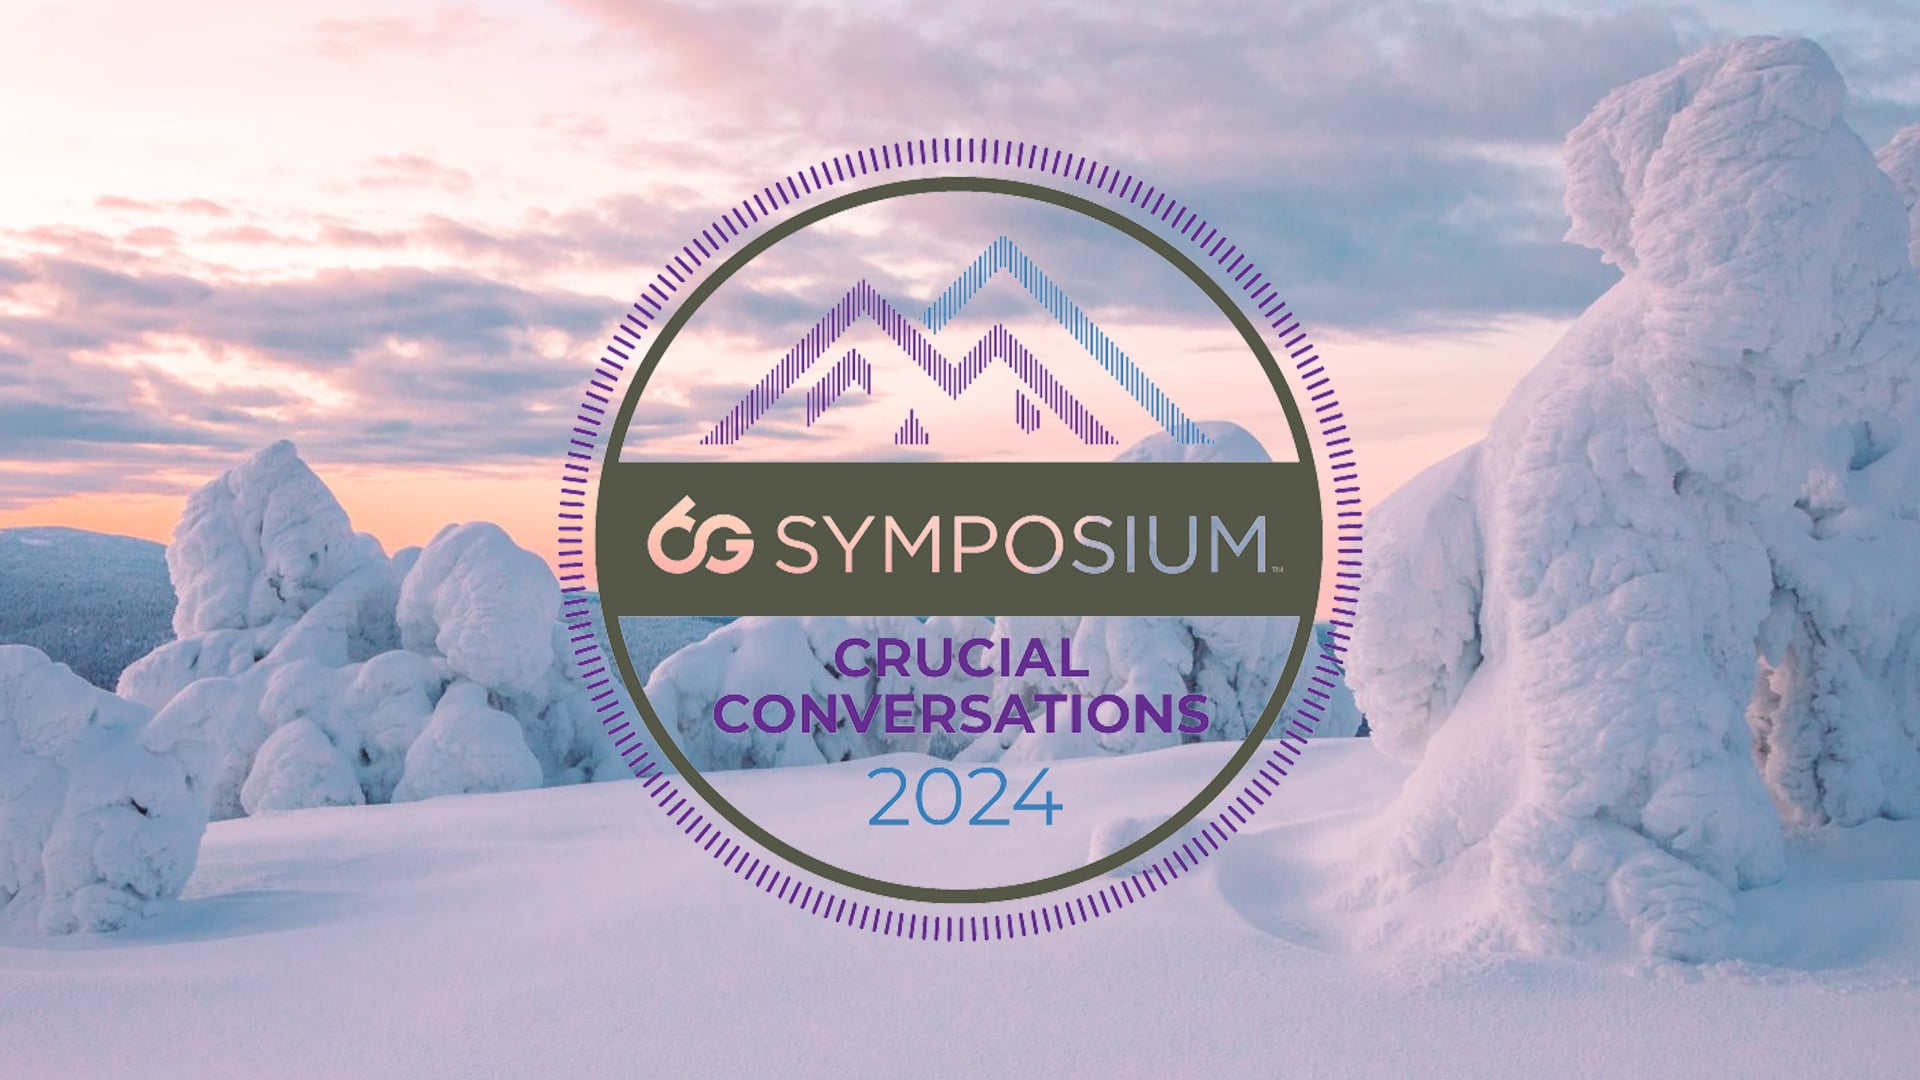 6G Symposium Spring 2024